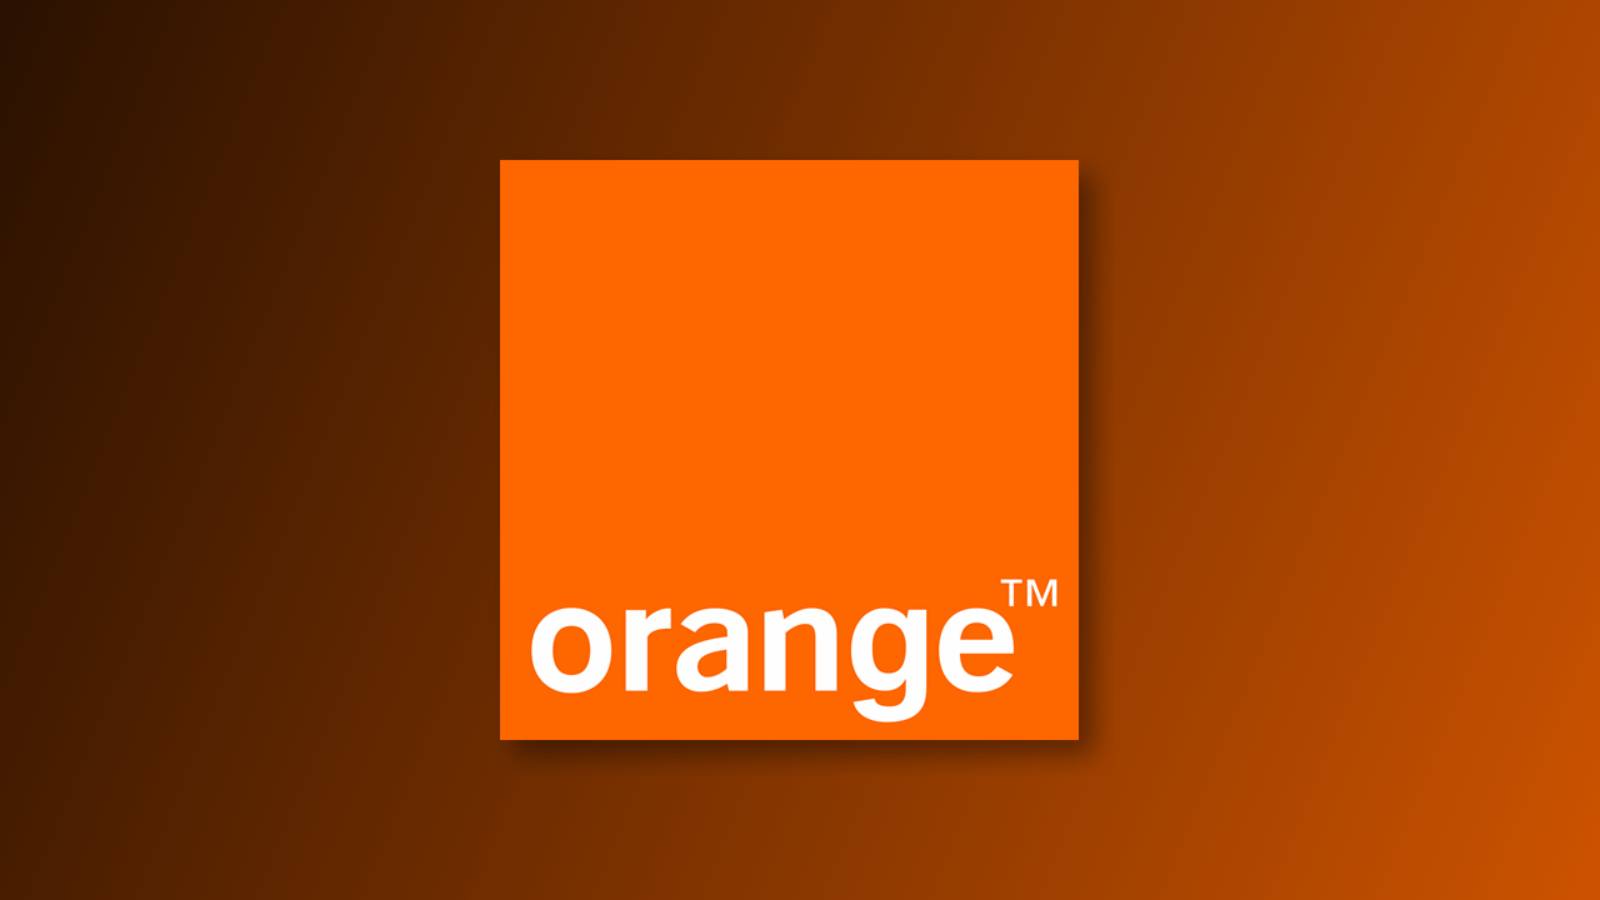 Orange prognostizierte GROSSES PROBLEM, das Kunden betrifft